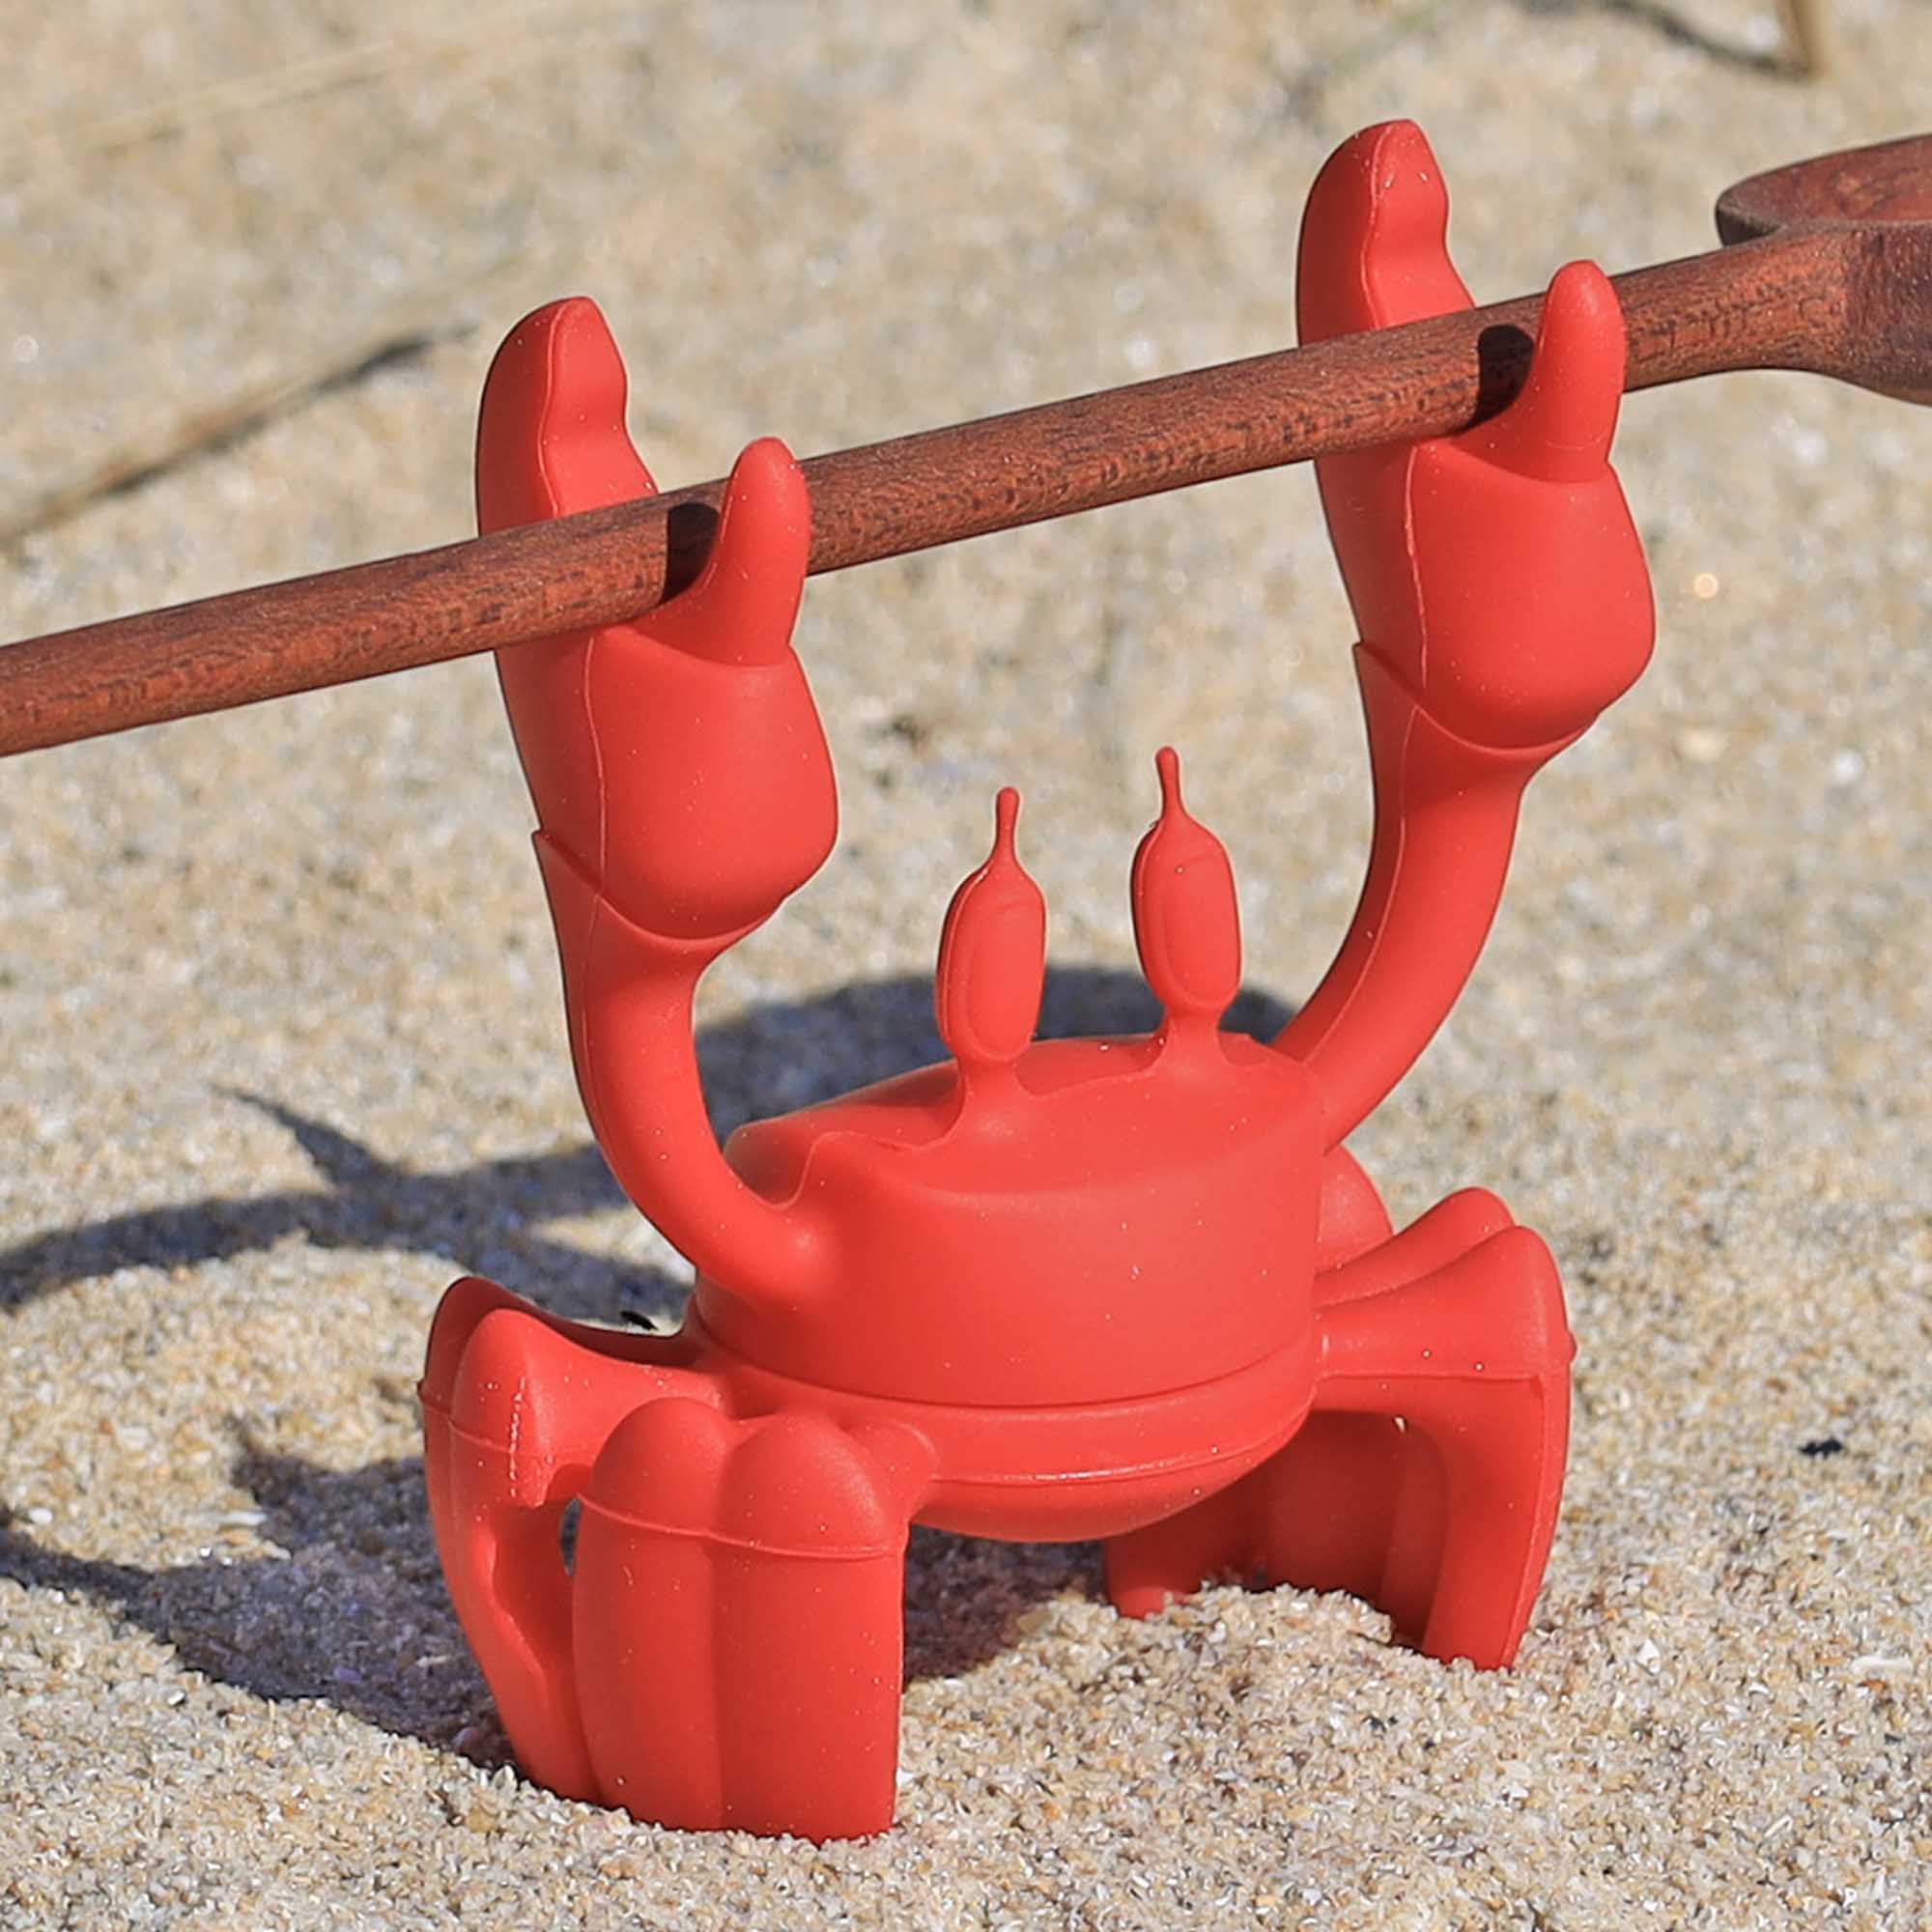 Porte-ustensiles en silicone rouge en forme de crabe, support de